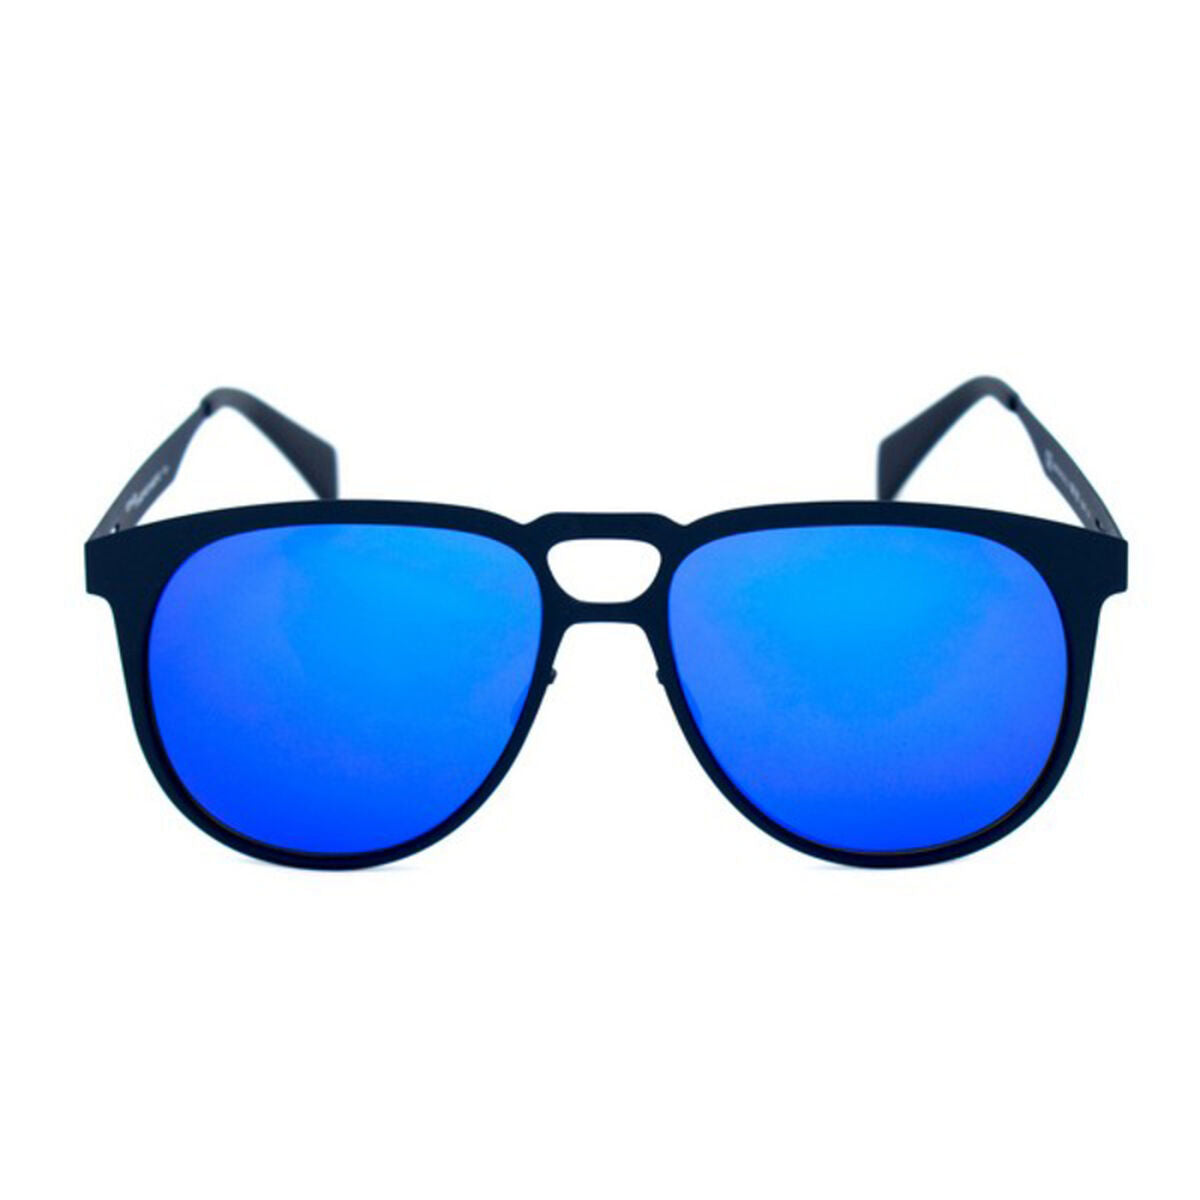 Unisex Sunglasses Italia Independent 0501-021-000